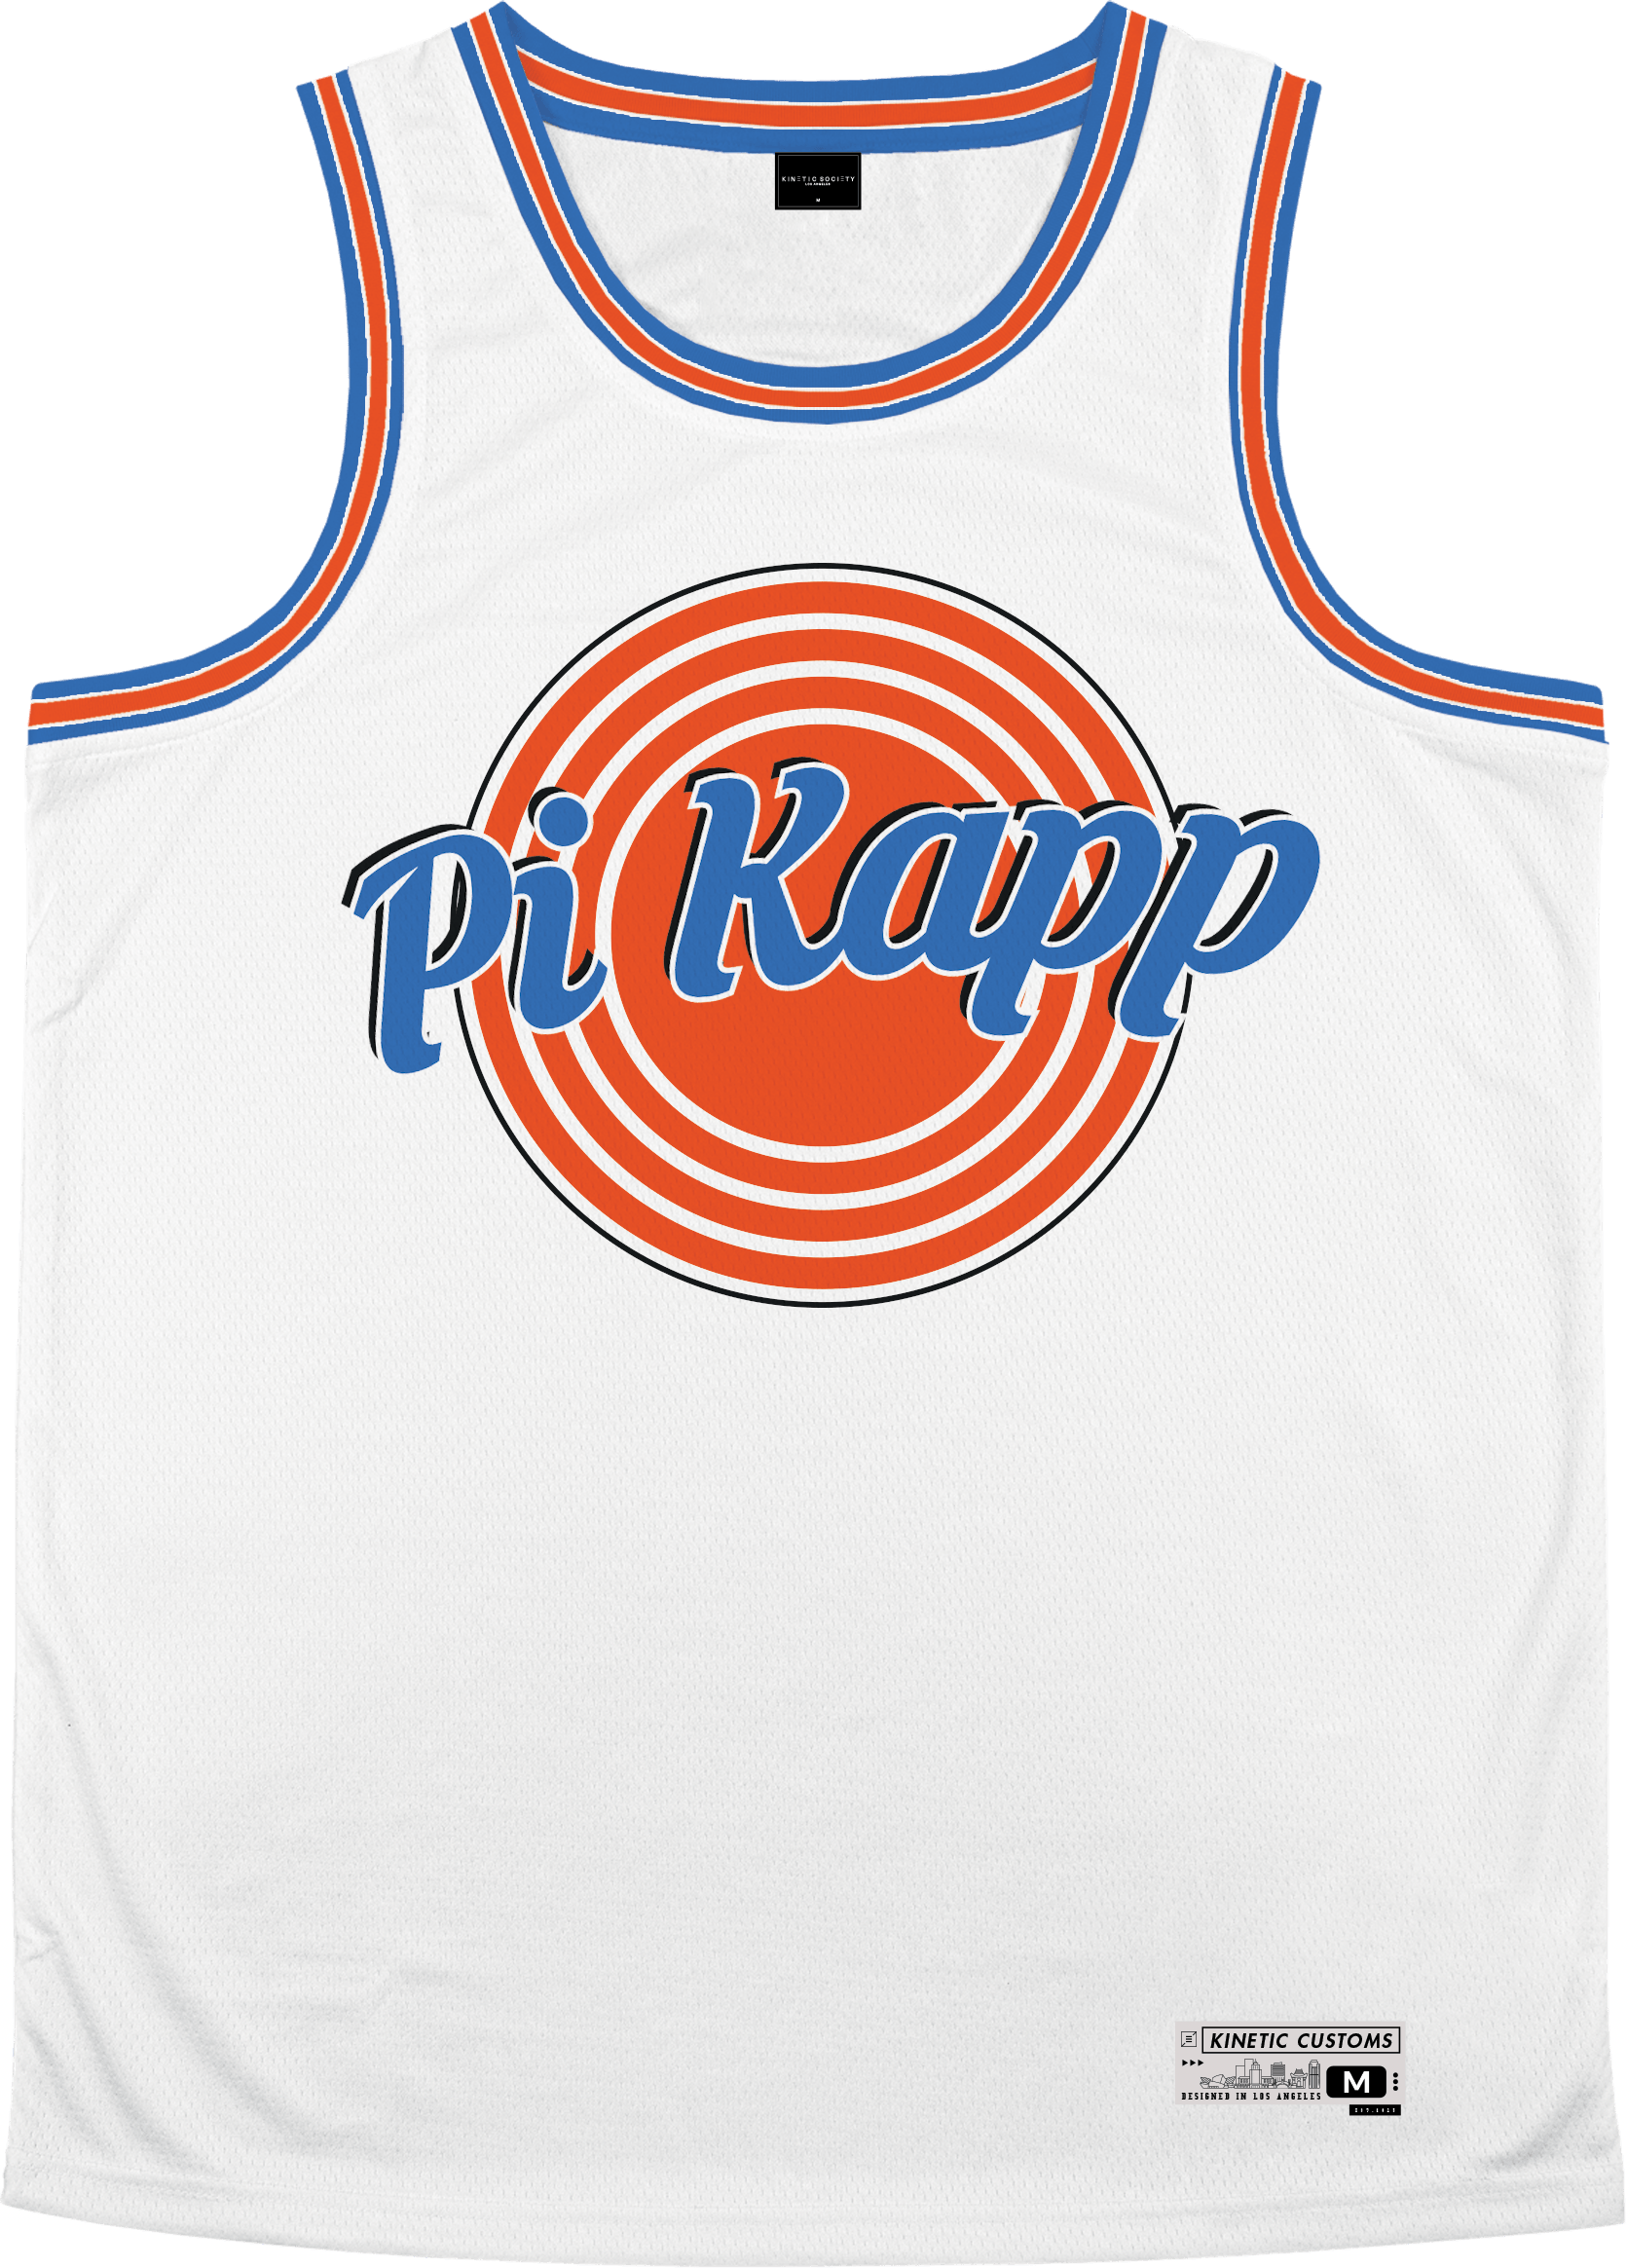 Pi Kappa Phi - Vintage Basketball Jersey Premium Basketball Kinetic Society LLC 